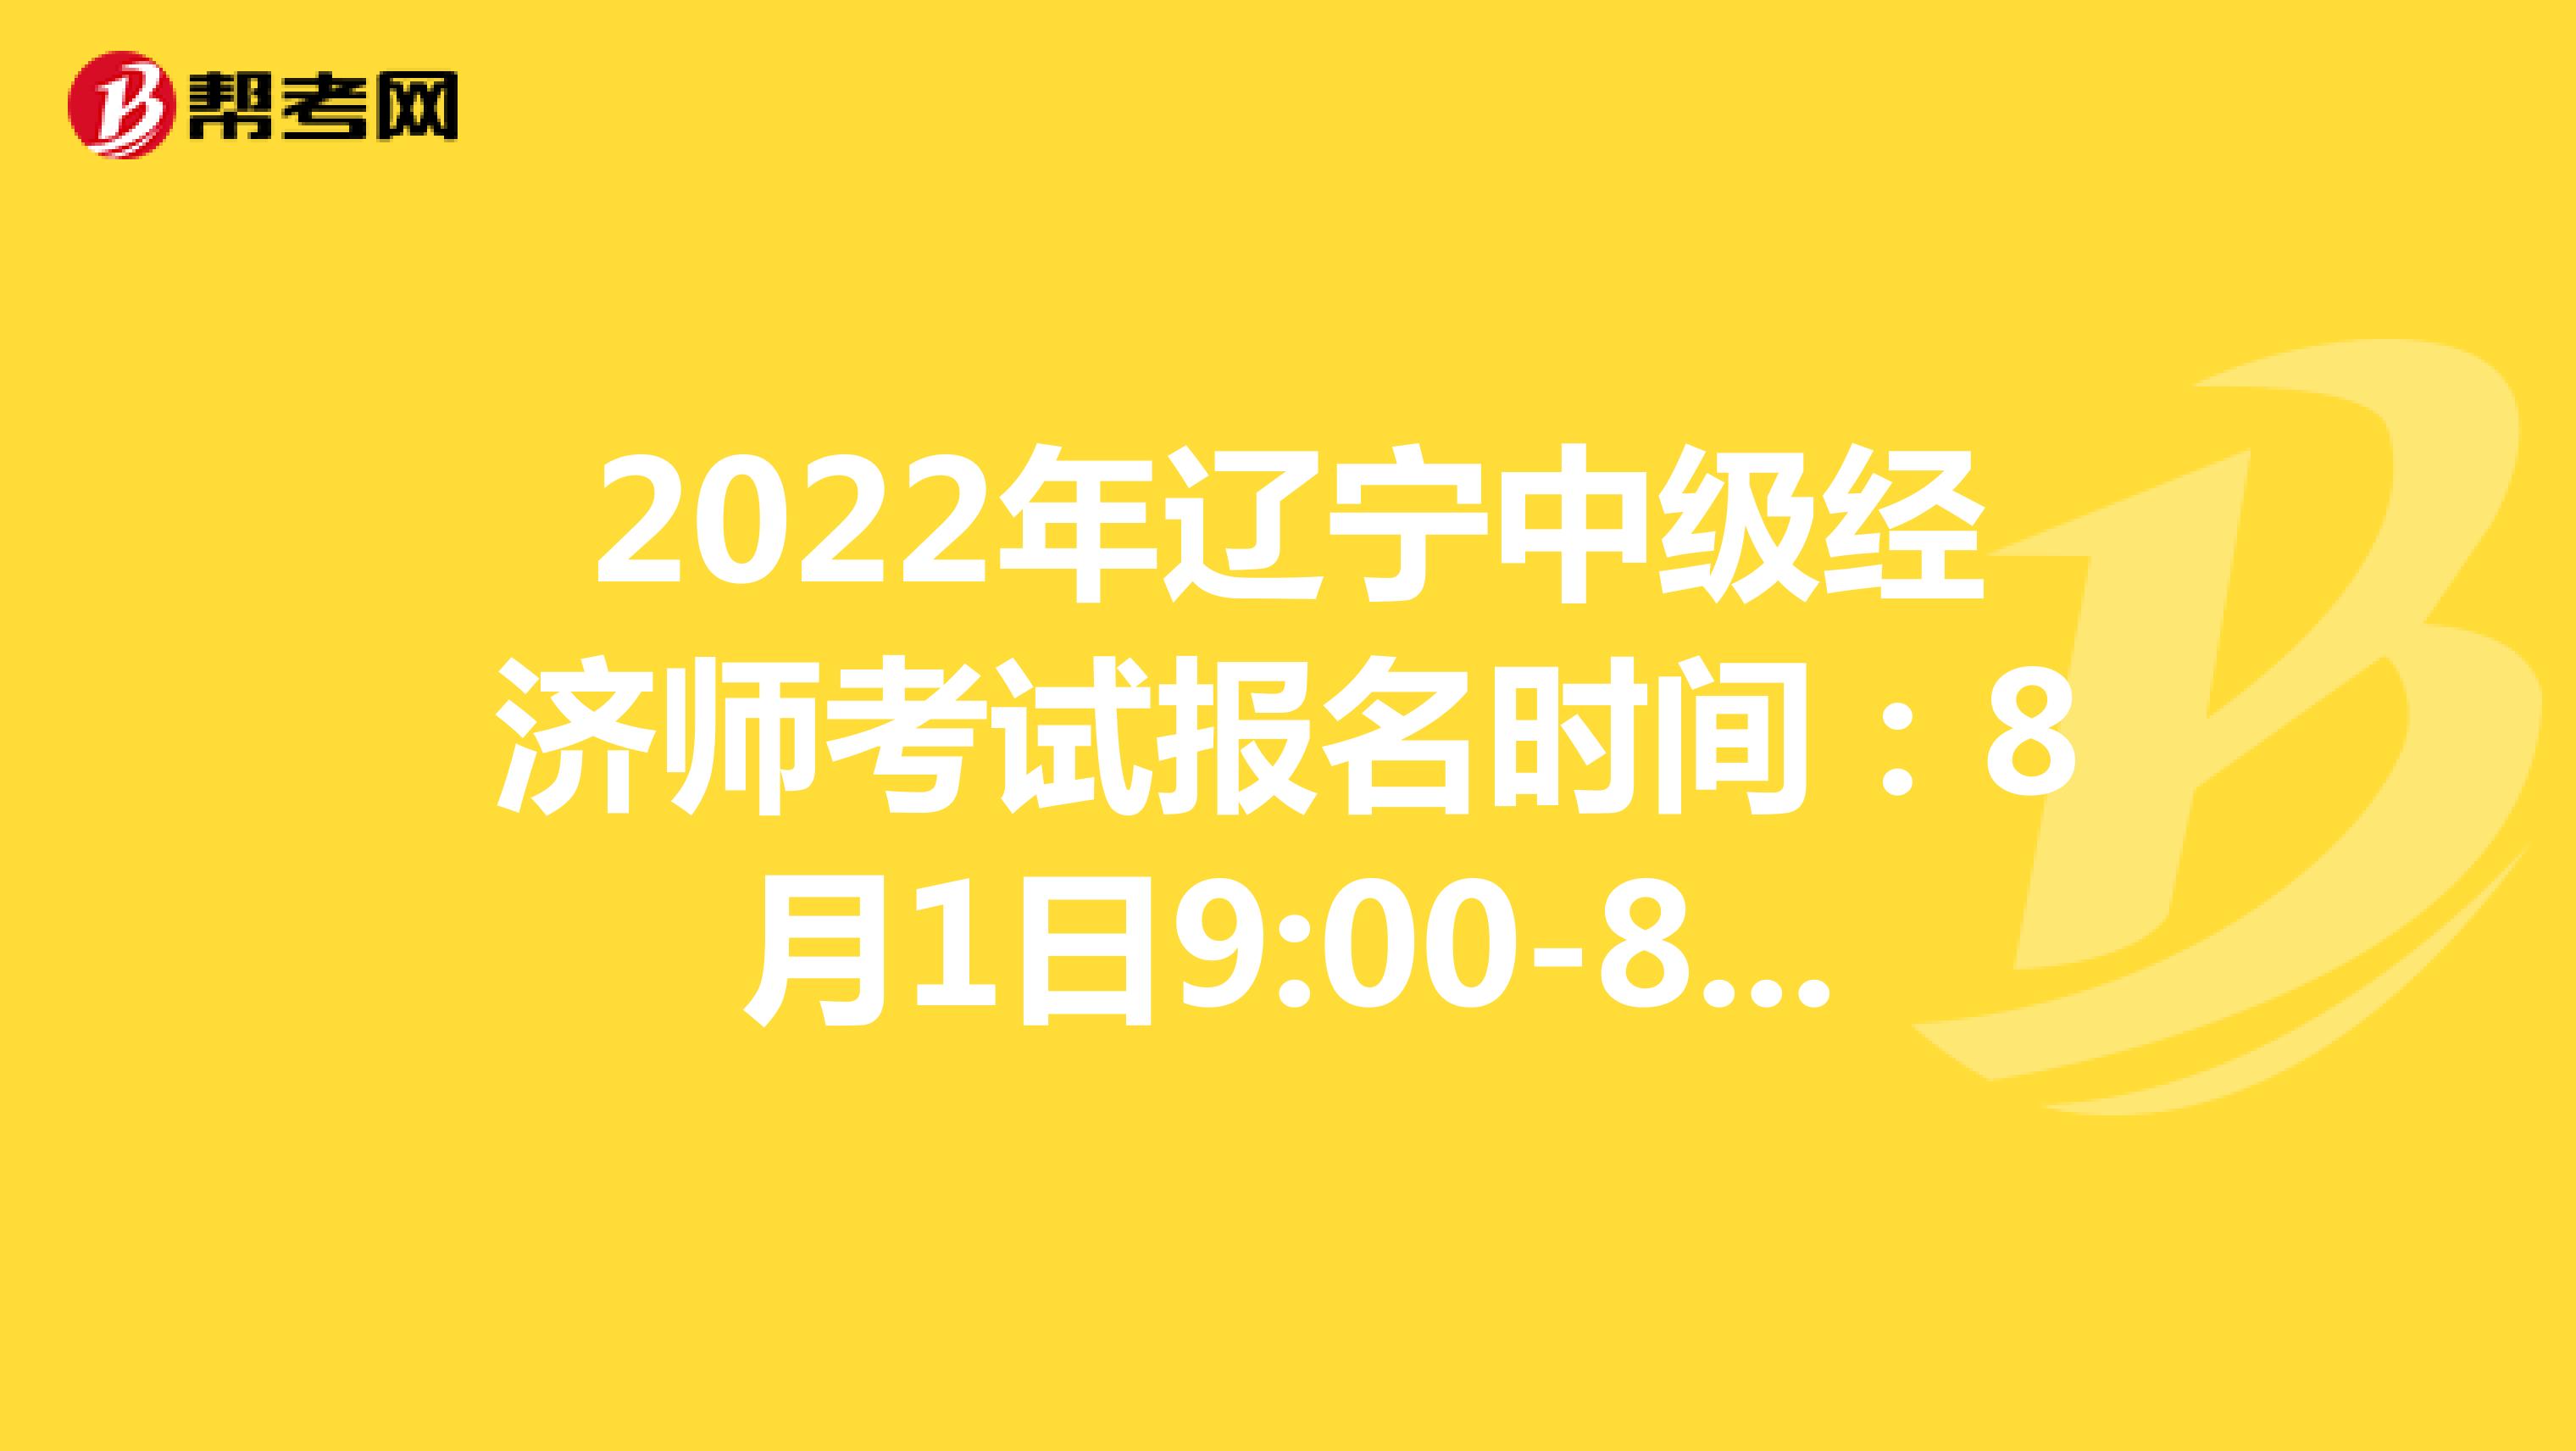 2022年辽宁中级经济师考试报名时间：8月1日9:00-8月11日24:00！